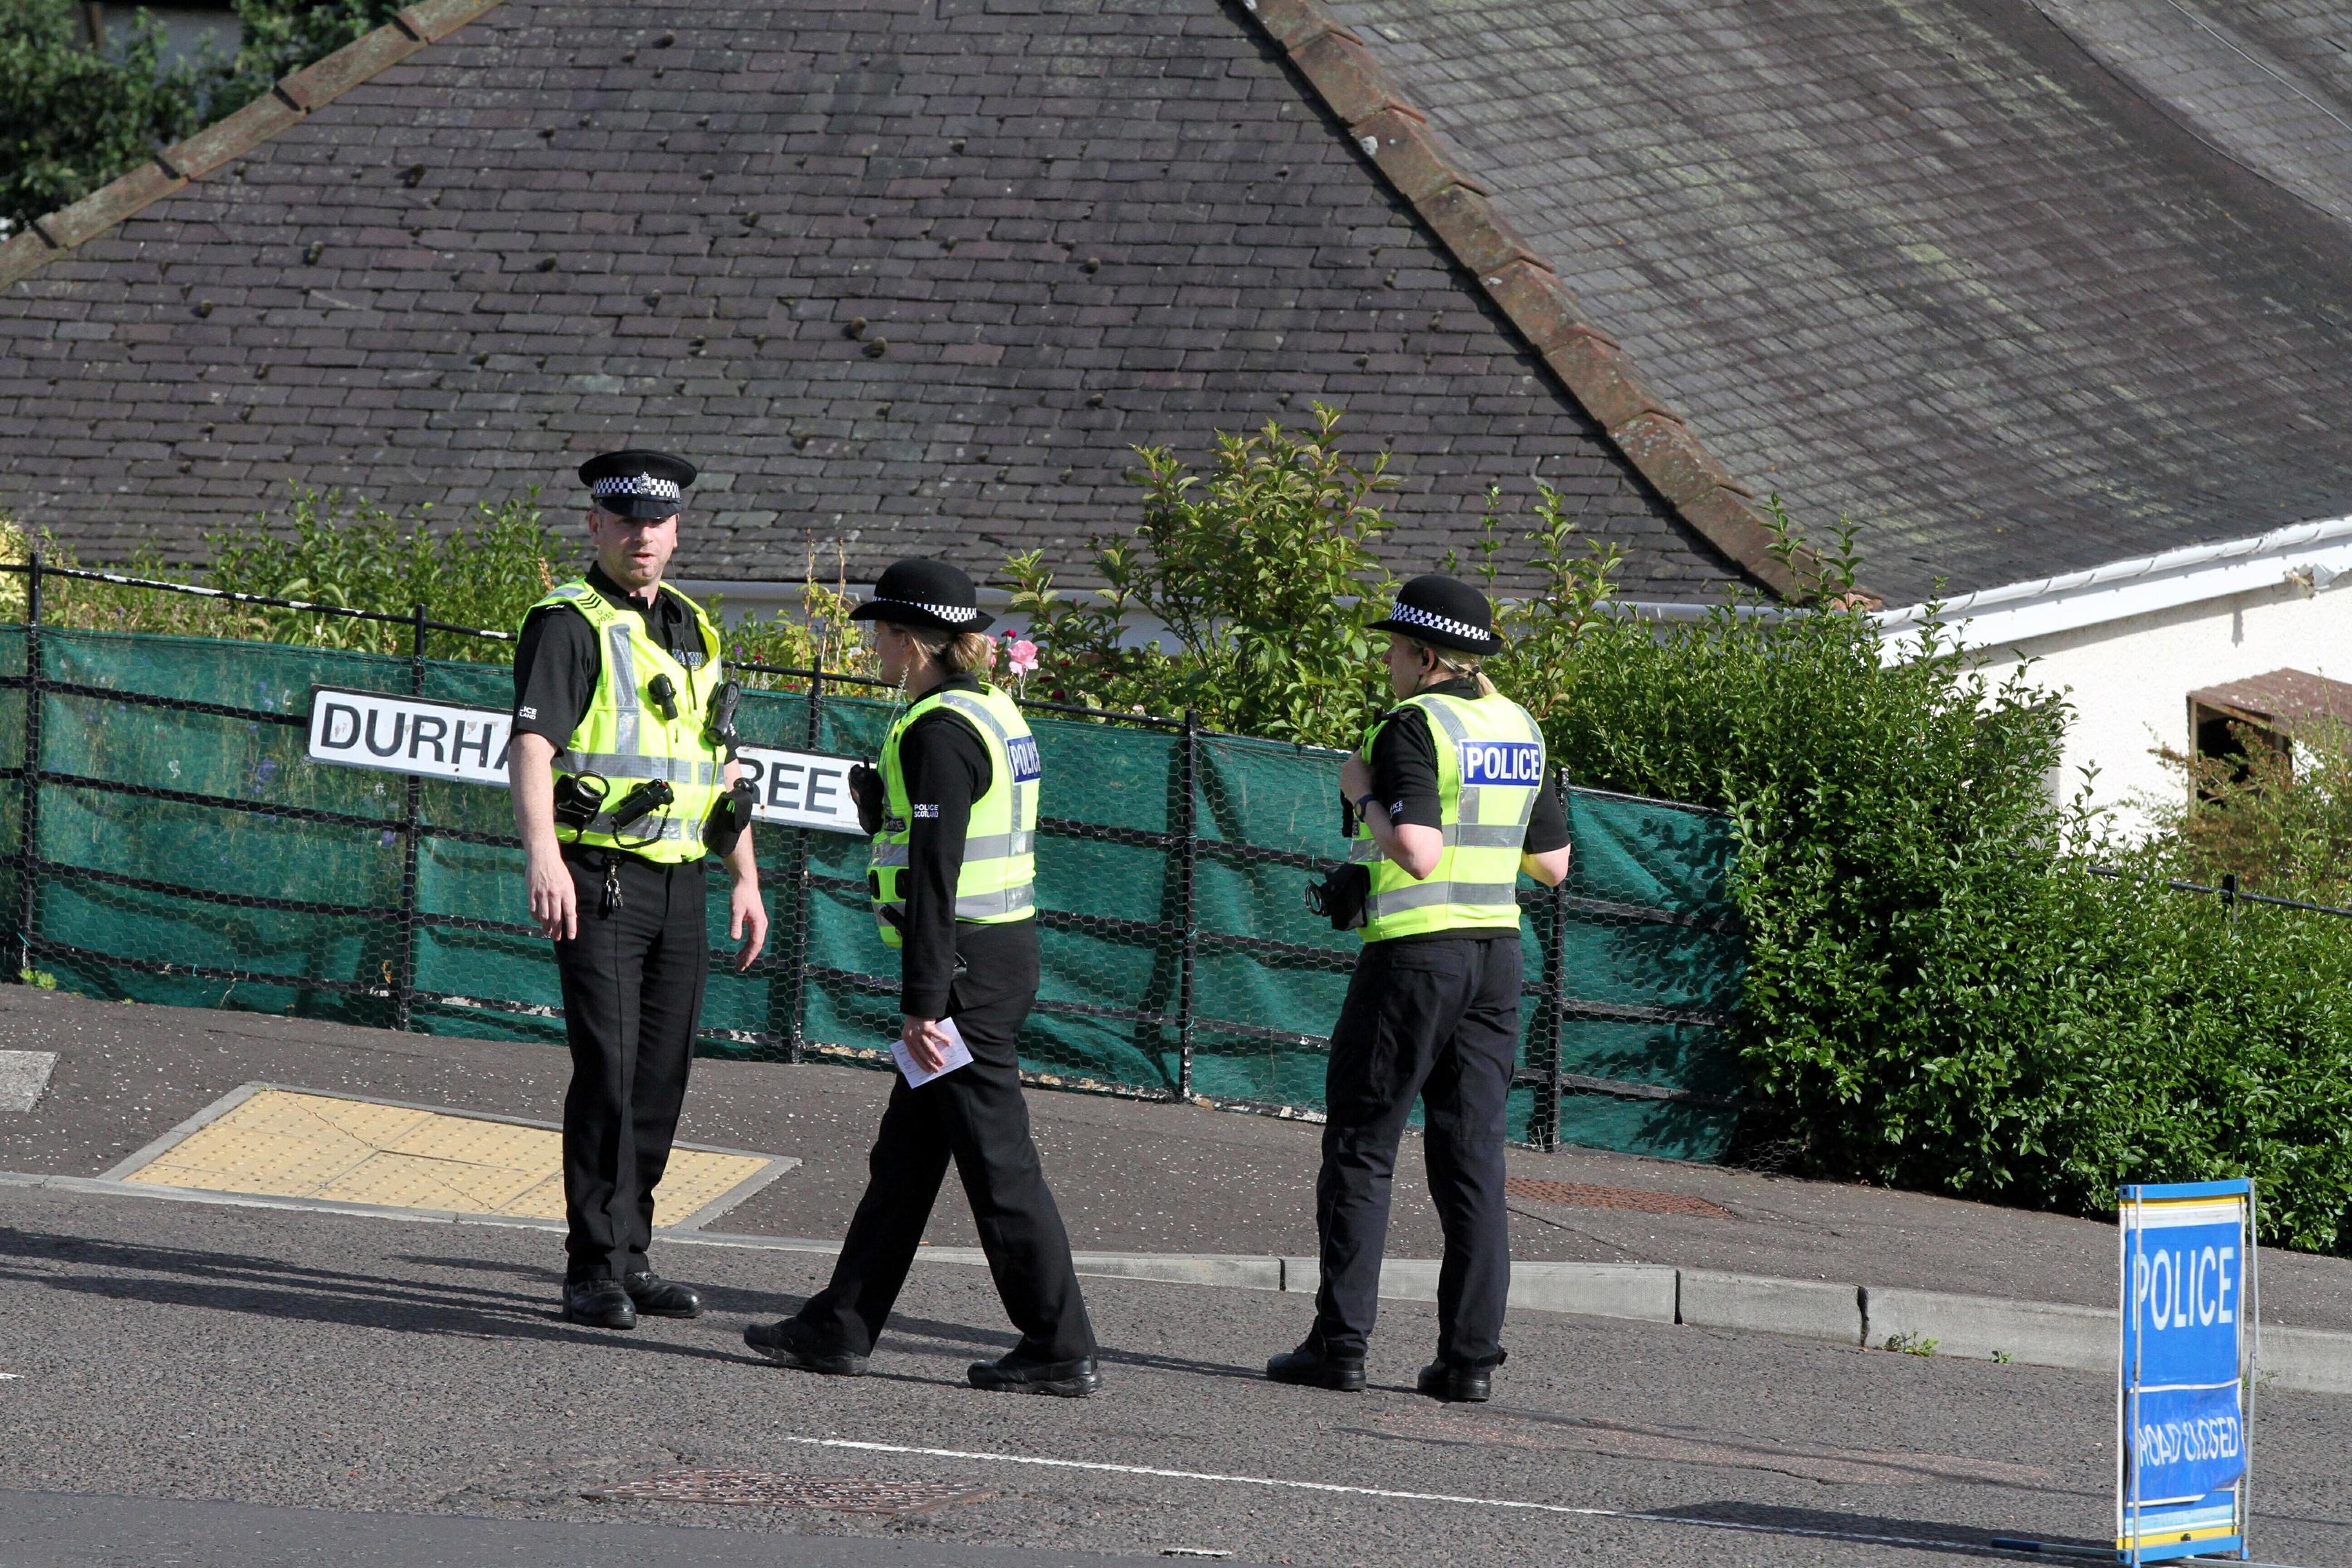 Police activity in Durham street, Monifieth.